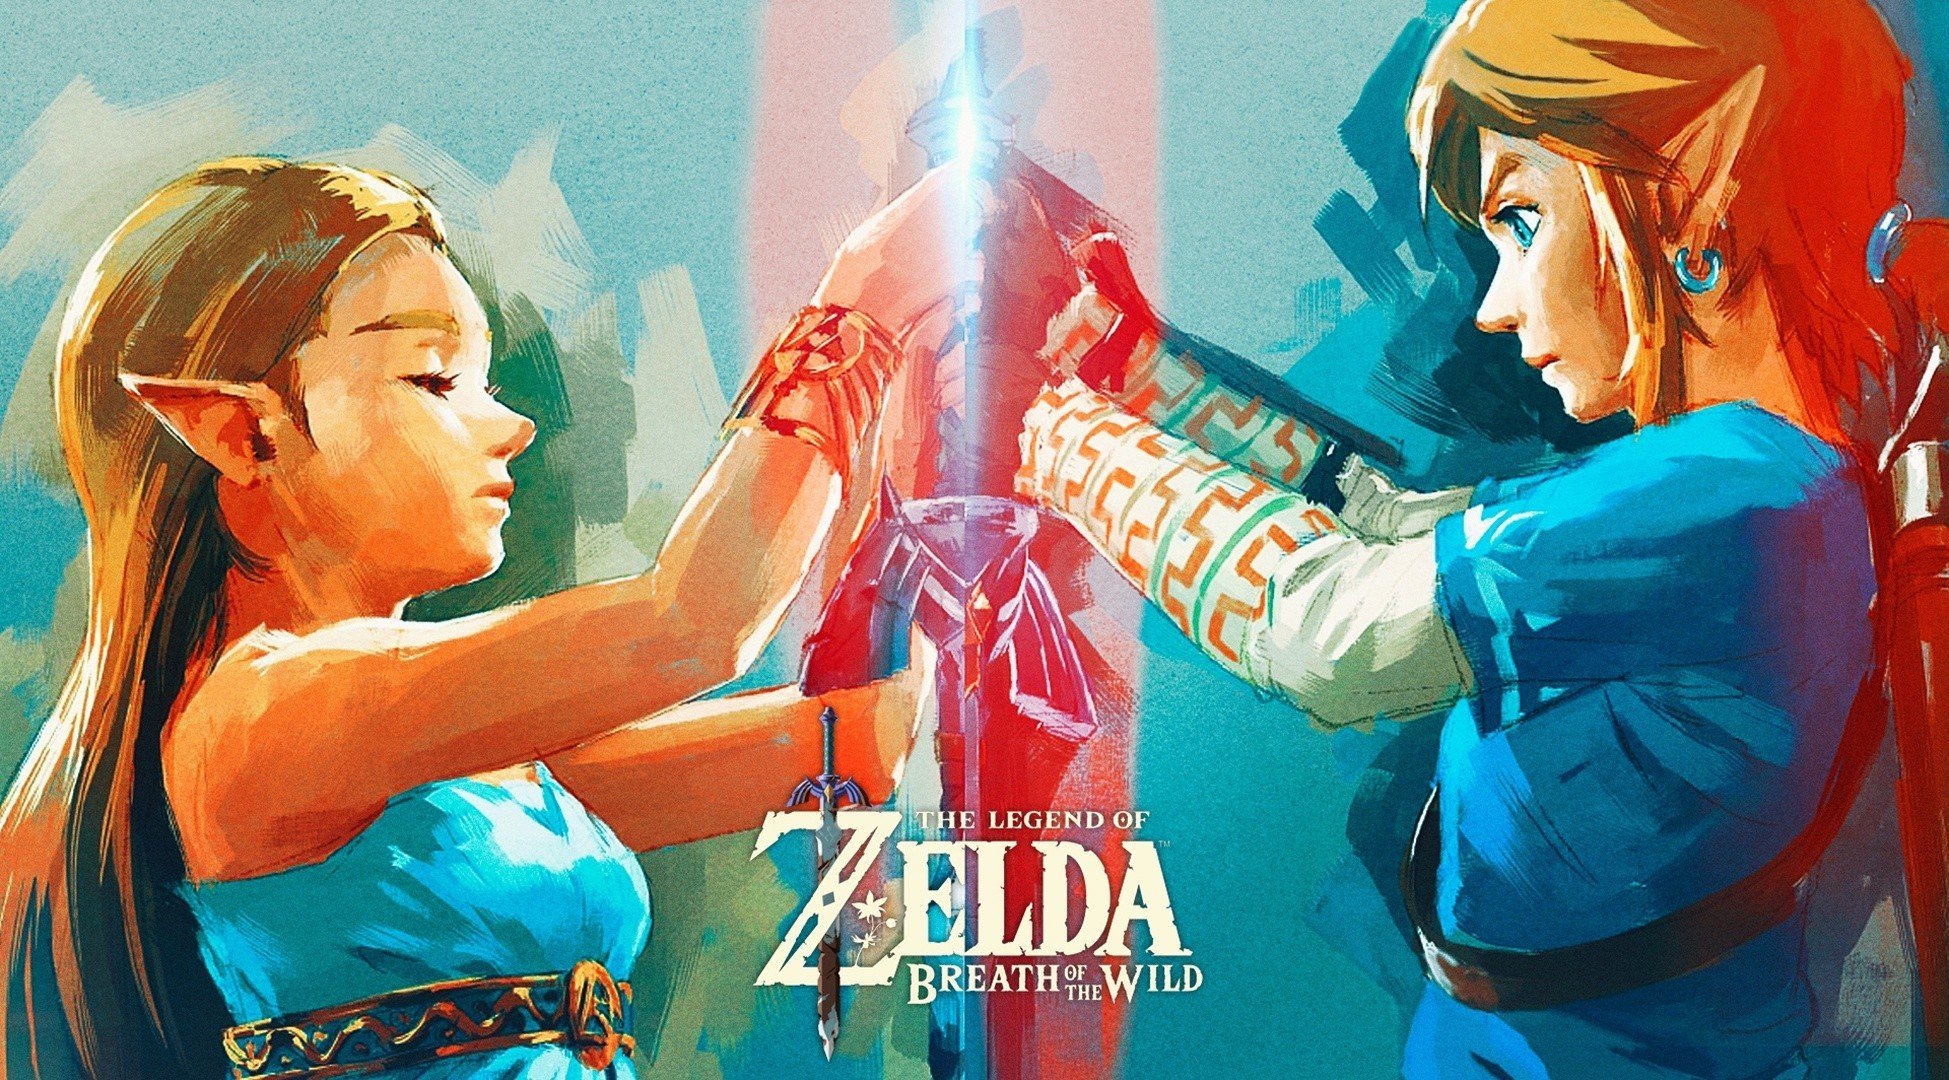 Link, Zelda, Princess Zelda, The Legend of Zelda: Breath of the Wild, Nintendo, The Legend of Zelda, Master Sword Wallpaper